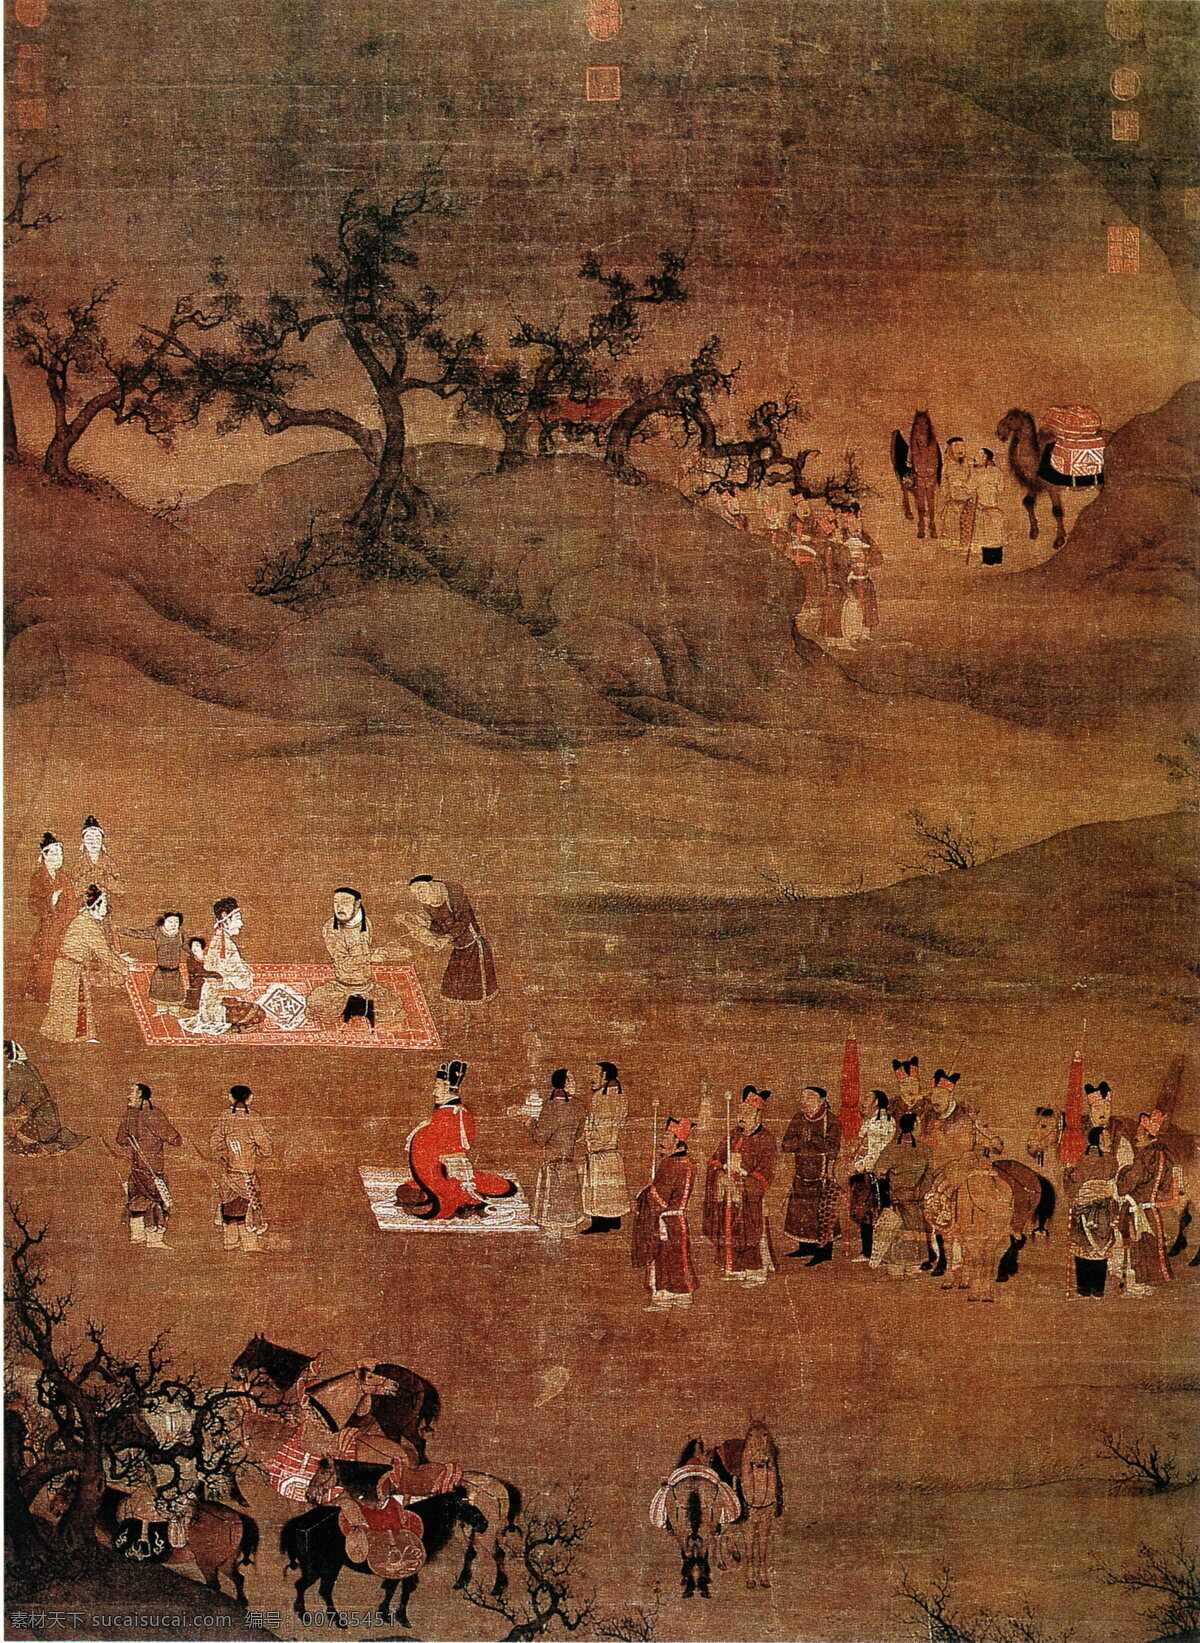 文姬归汉图 人物画 中国 古画 中国古画 设计素材 人物名画 古典藏画 书画美术 棕色